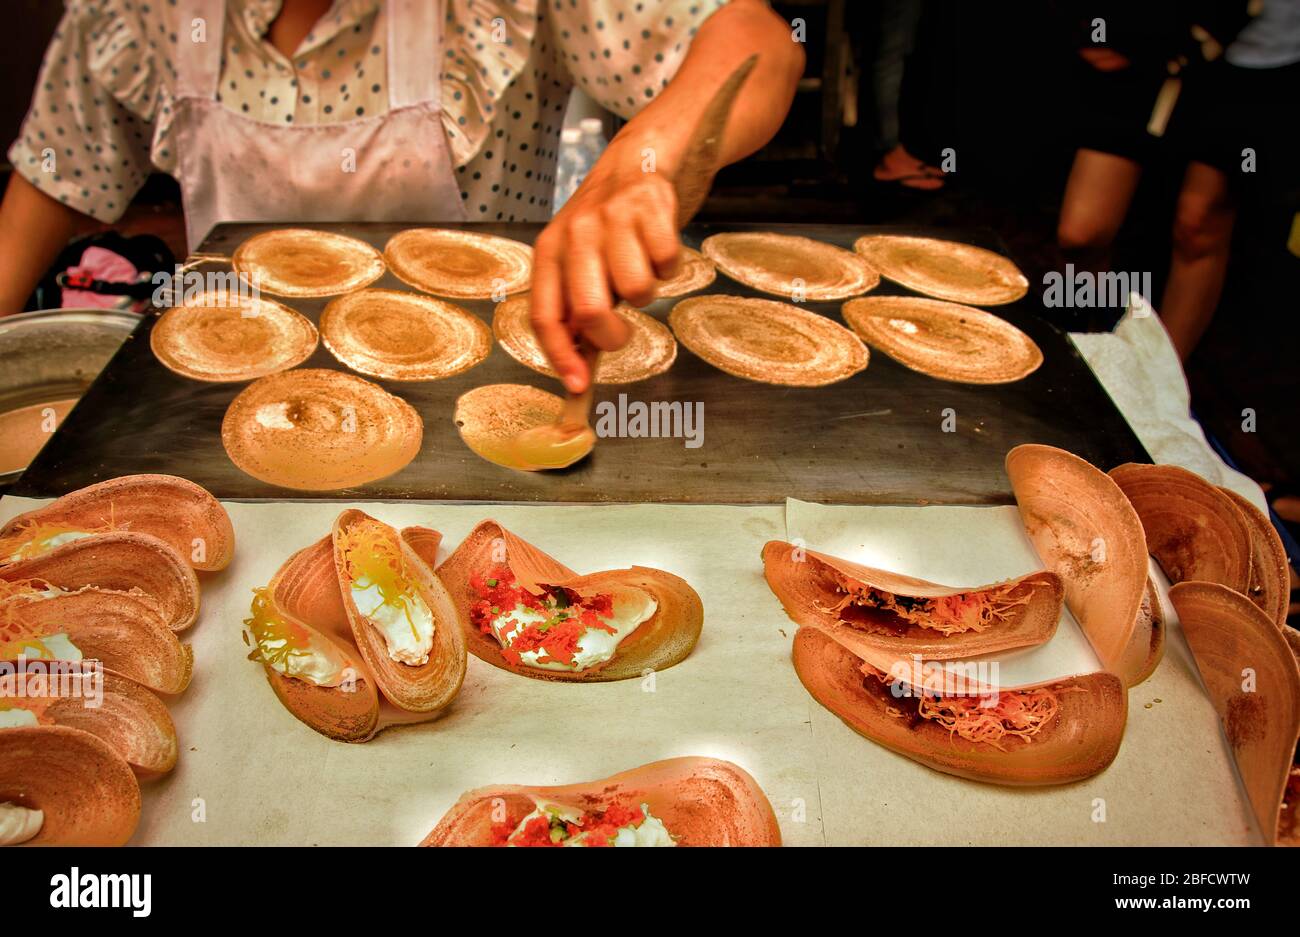 Vendita di cibo di strada che cucina e vende spuntini tradizionali chiamati khanom bueang o crepe croccante thailandese, mostrando la cultura locale e la cucina della Thailandia Foto Stock